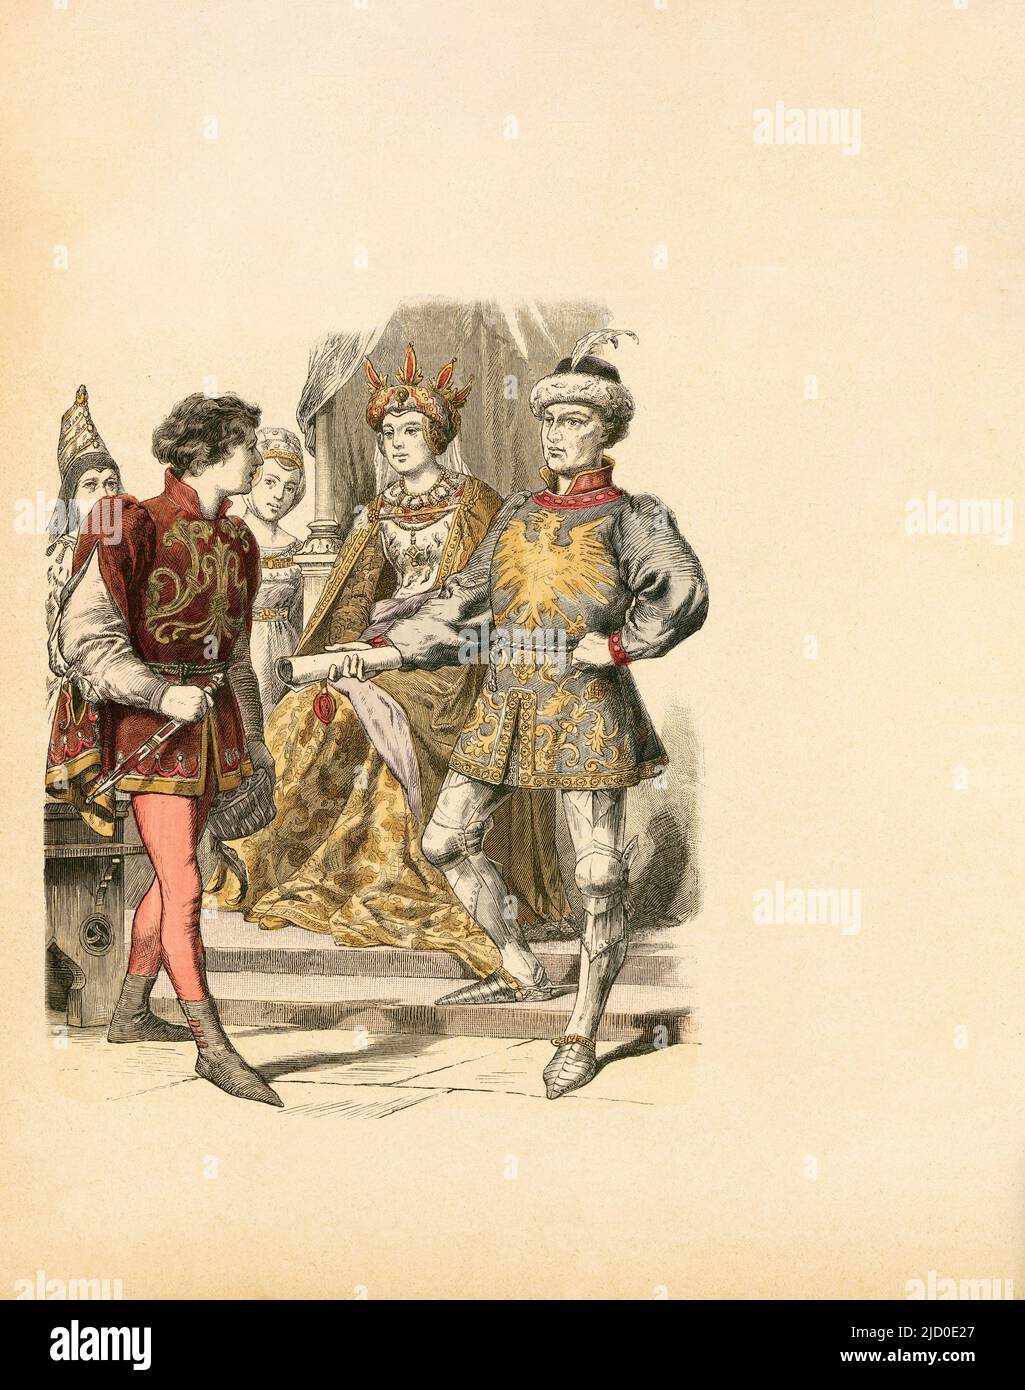 Nobility, Burgundy, 1470, Illustration, The History of Costume, Braun & Schneider, Munich, Germany, 1861-1880 Stock Photo